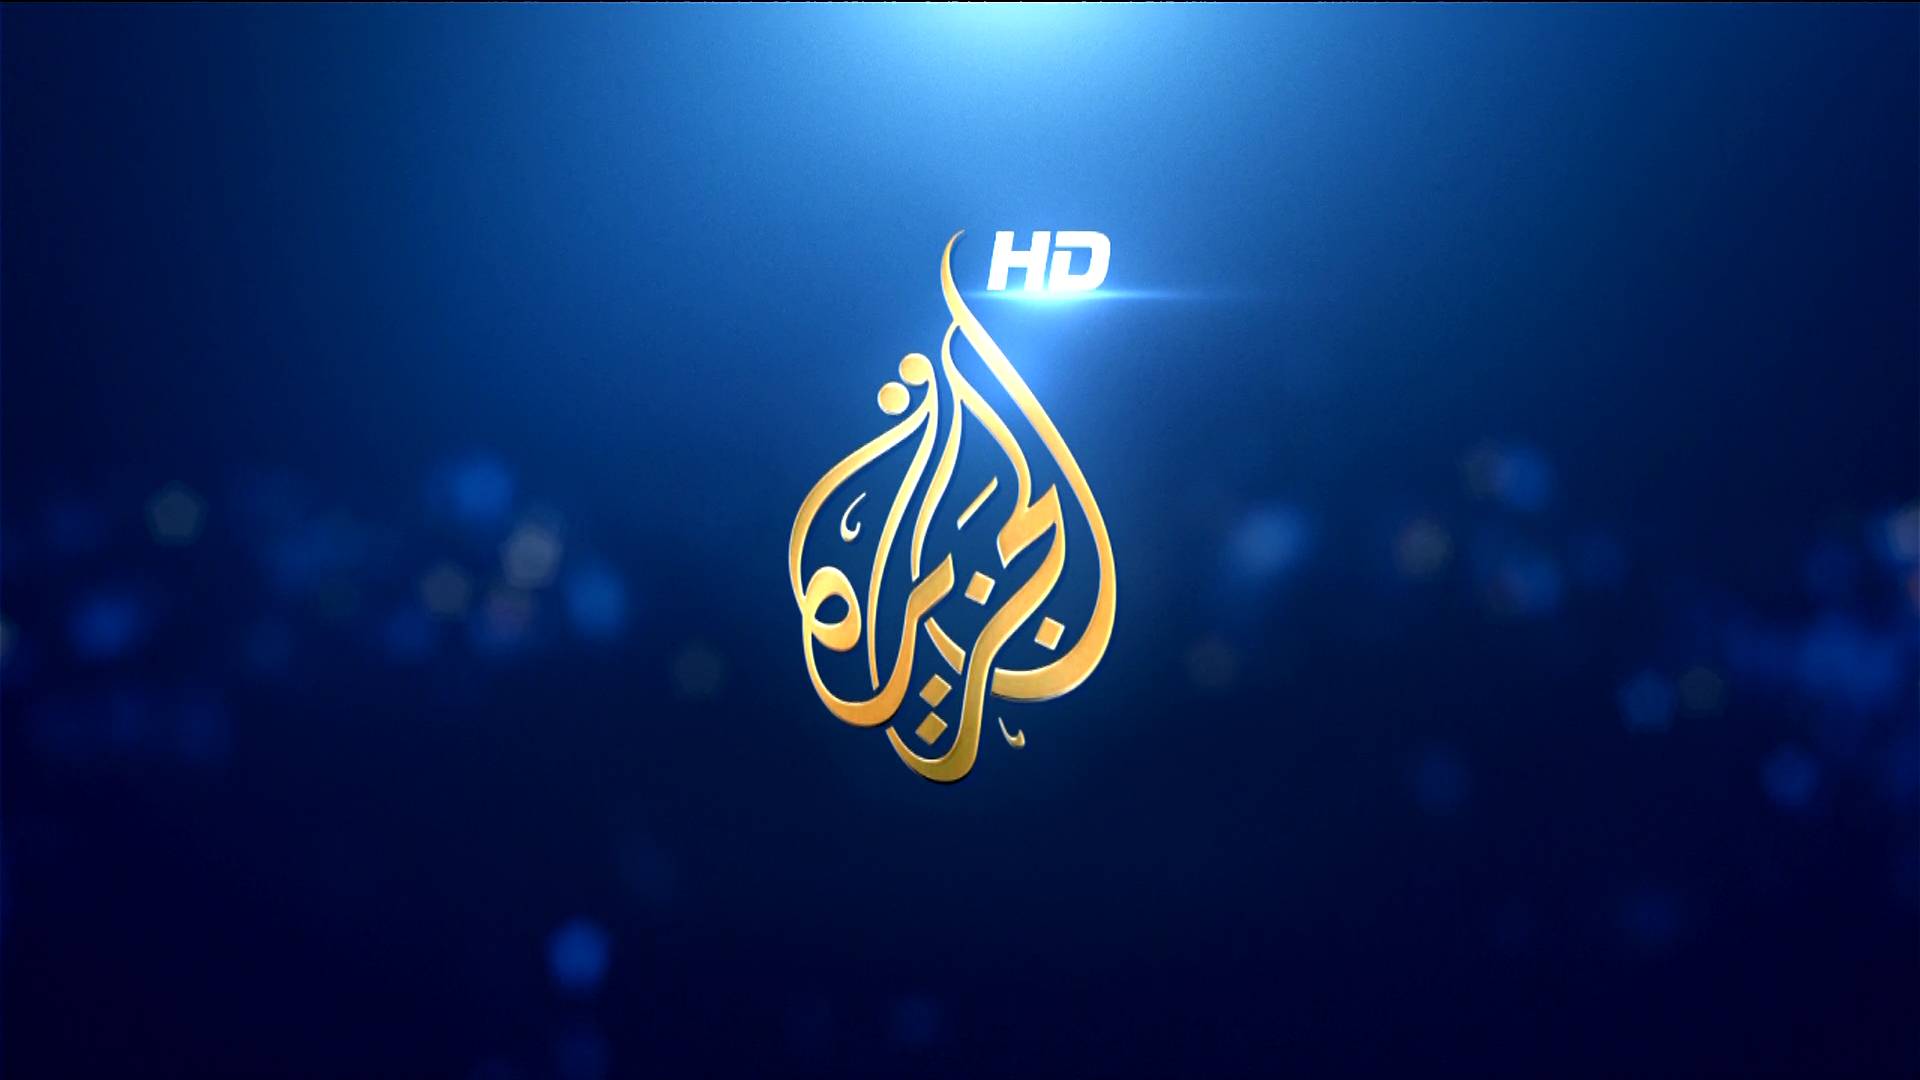 الاحتلال يغلق مكاتب الجزيرة ويصادر معداتها .. إمعان في قمع الصحافة